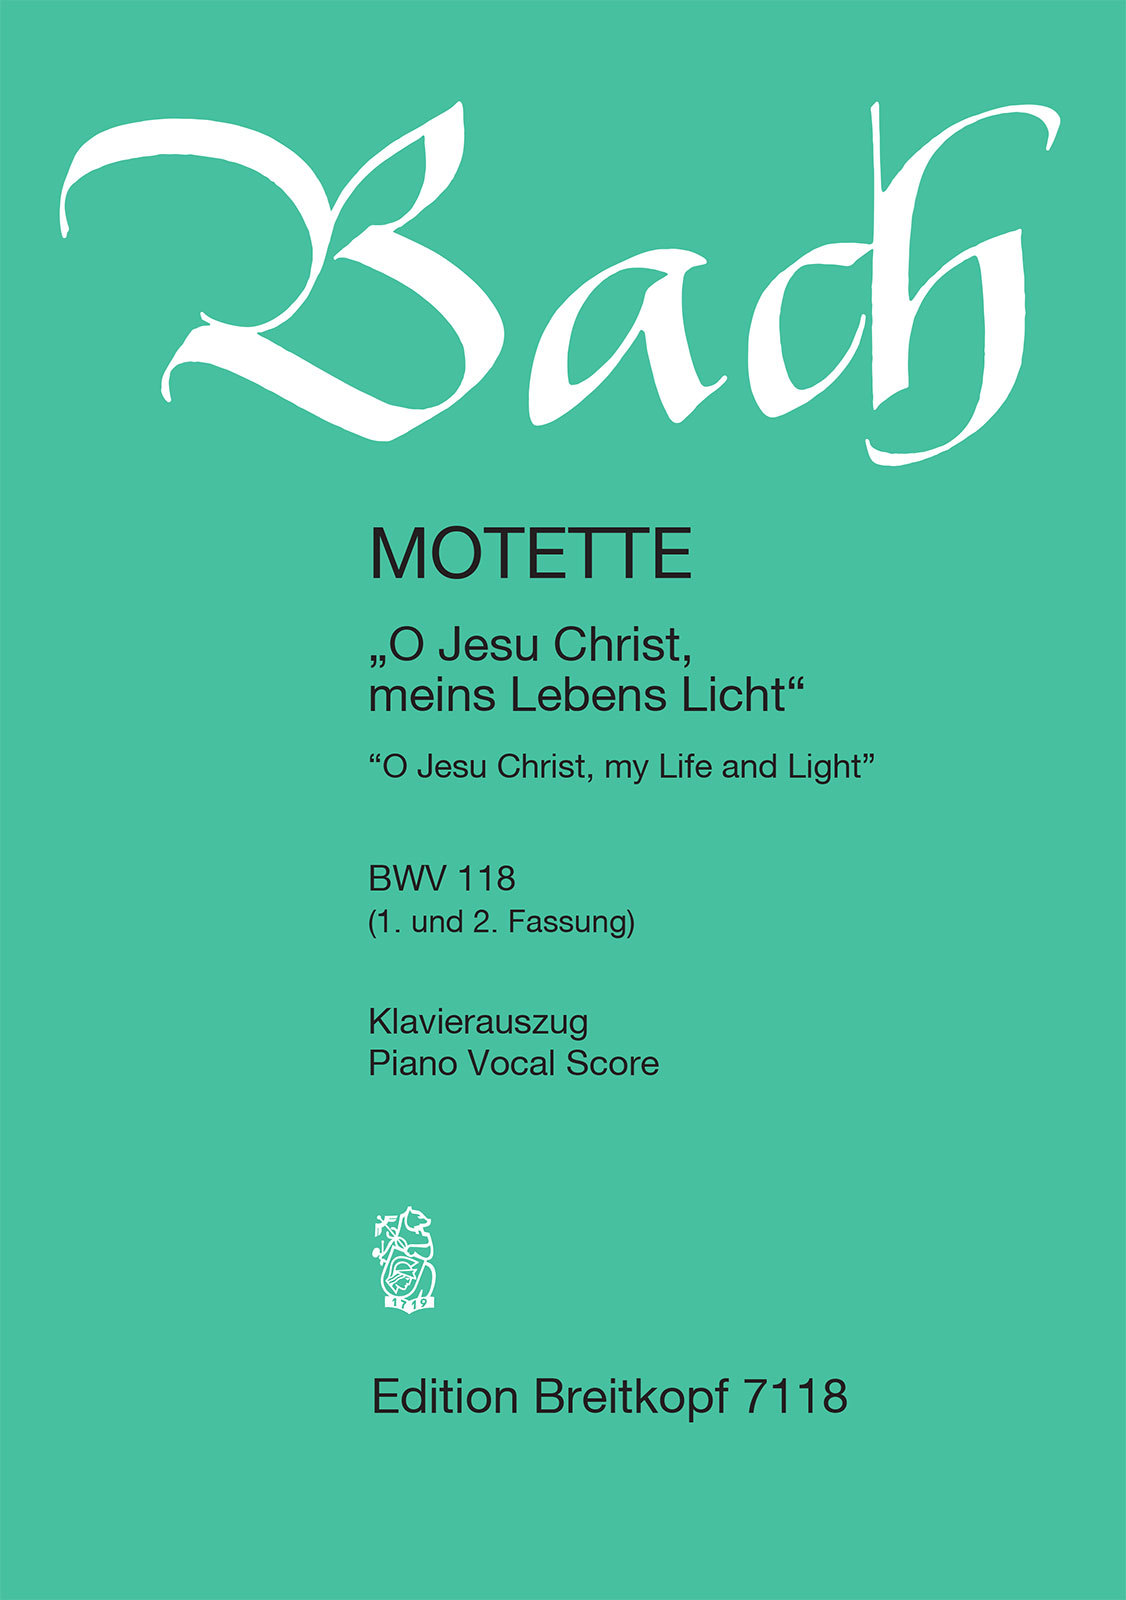 J. S. Bach - MOTETTE "O JESU CHRIST, MEINS LEBENS LICHT" BWV 118 (1. UND 2. FASSUNG) KLAVIERAUSZUG